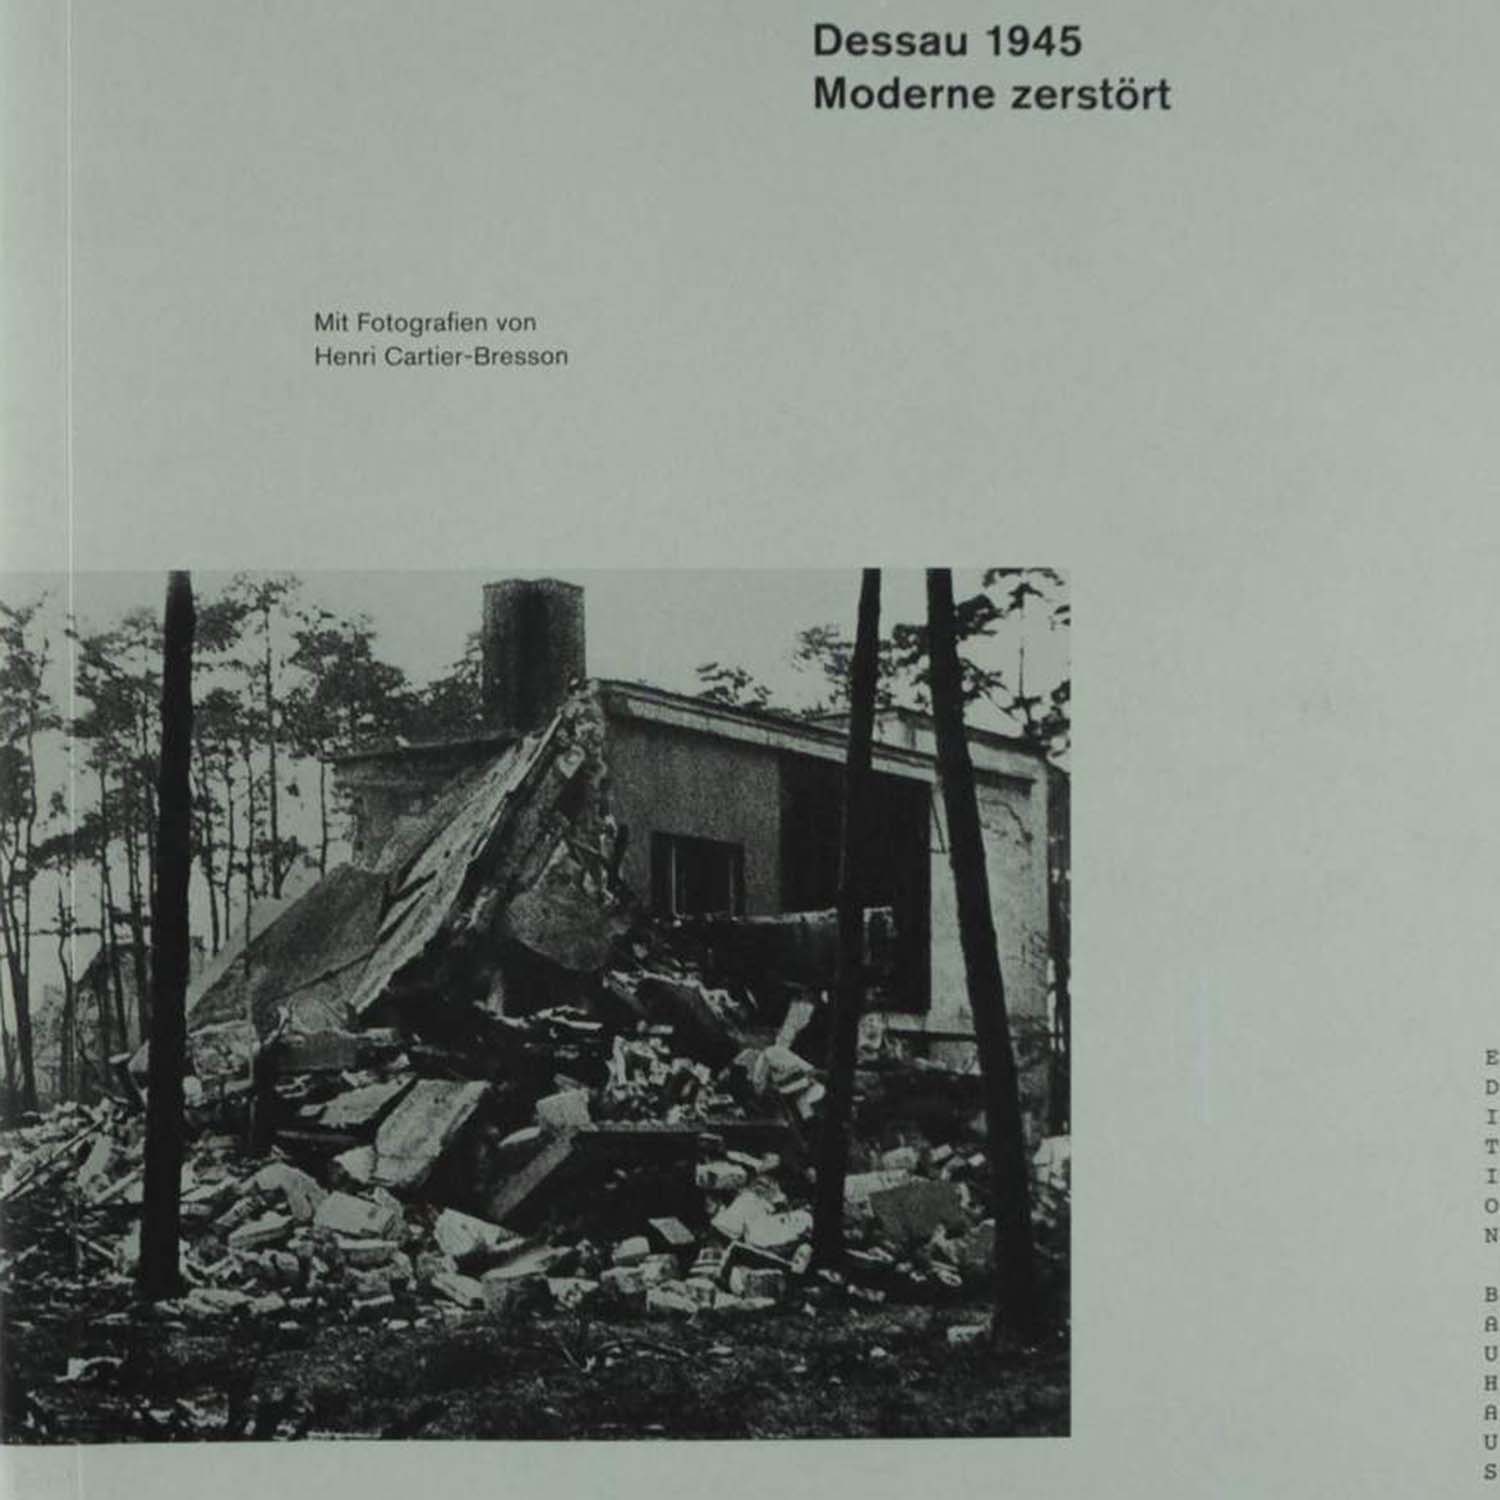 Dessau 1945的图片
